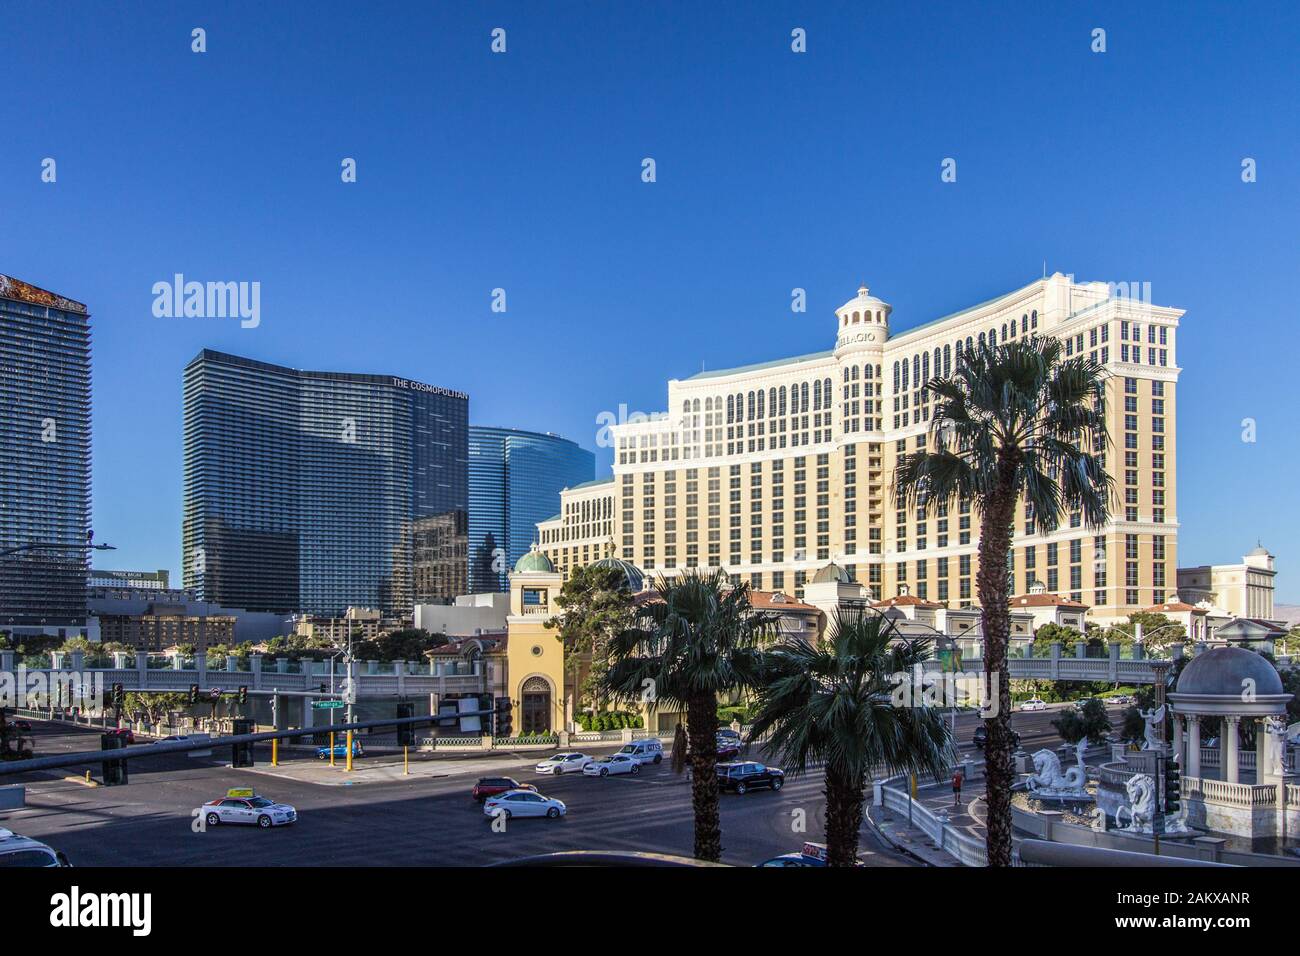 Las Vegas, Nevada, USA - Mai 6, 2019: Der belebten Kreuzung der Las Vegas Boulevard und Flamingo Road mit Ampel auf dem Las Vegas Strip mit werden. Stockfoto